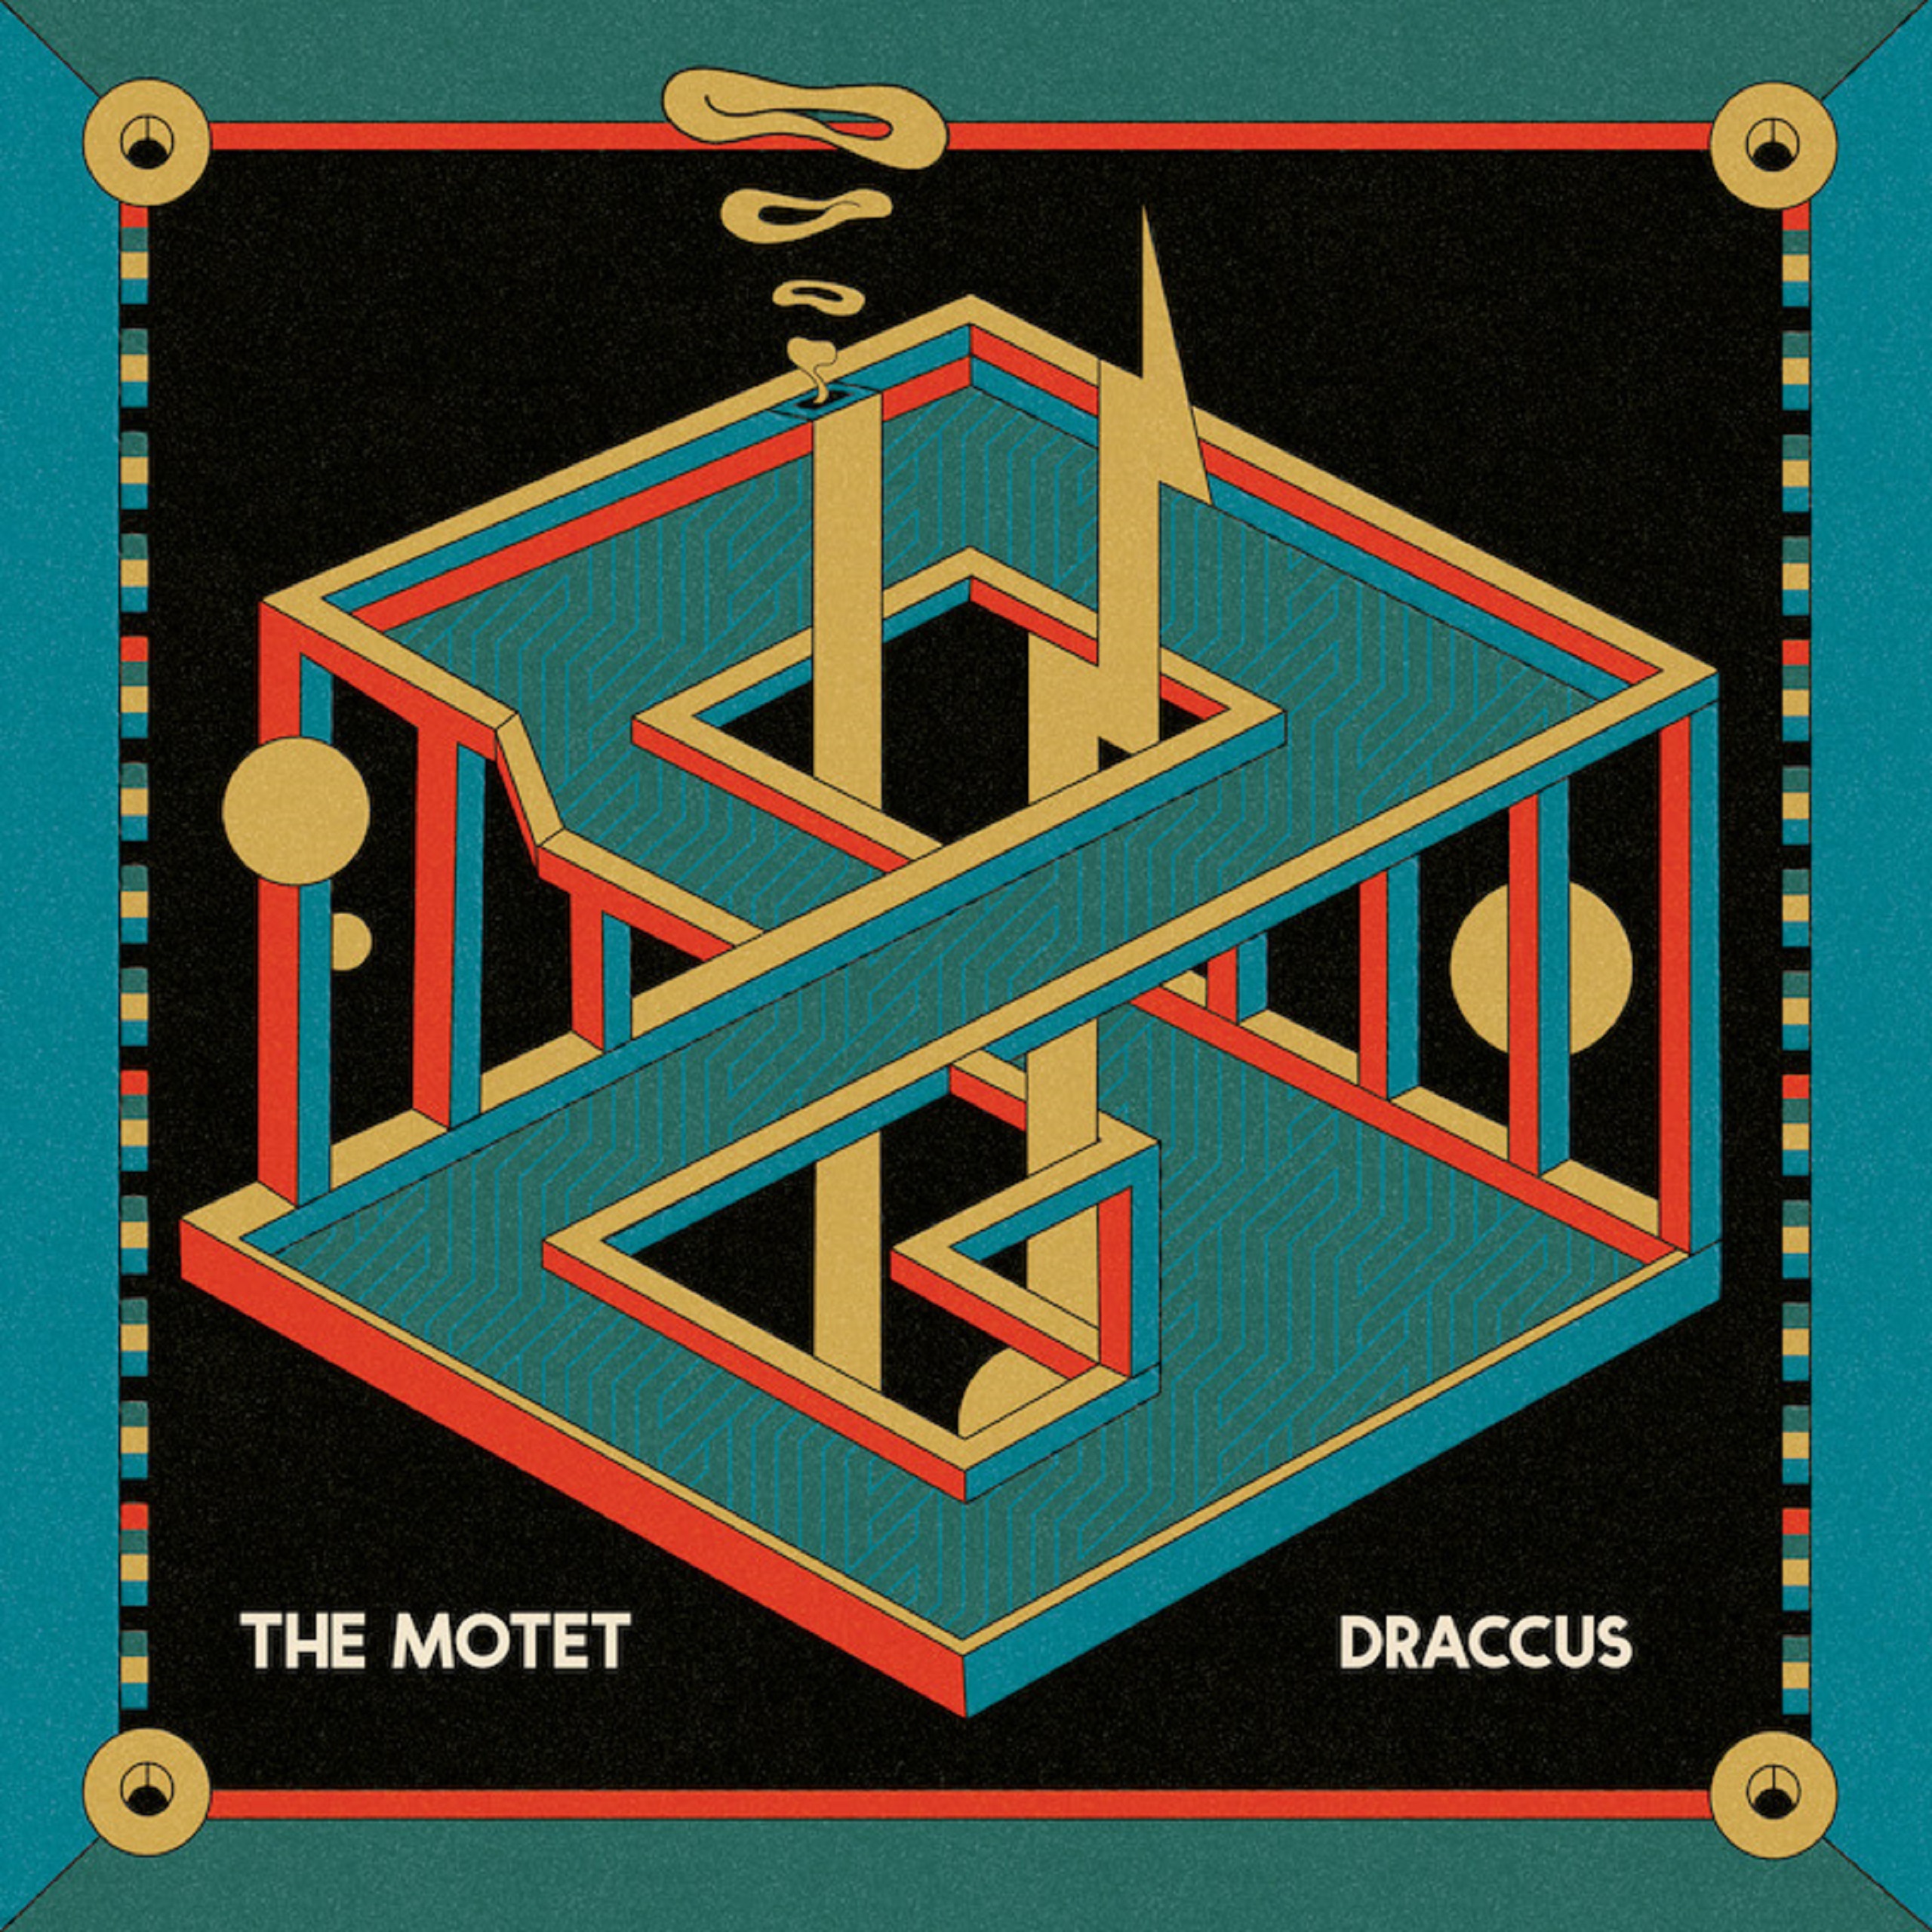 Funk, jazz & soul quintet The Motet drop instrumental LP single "Draccus"